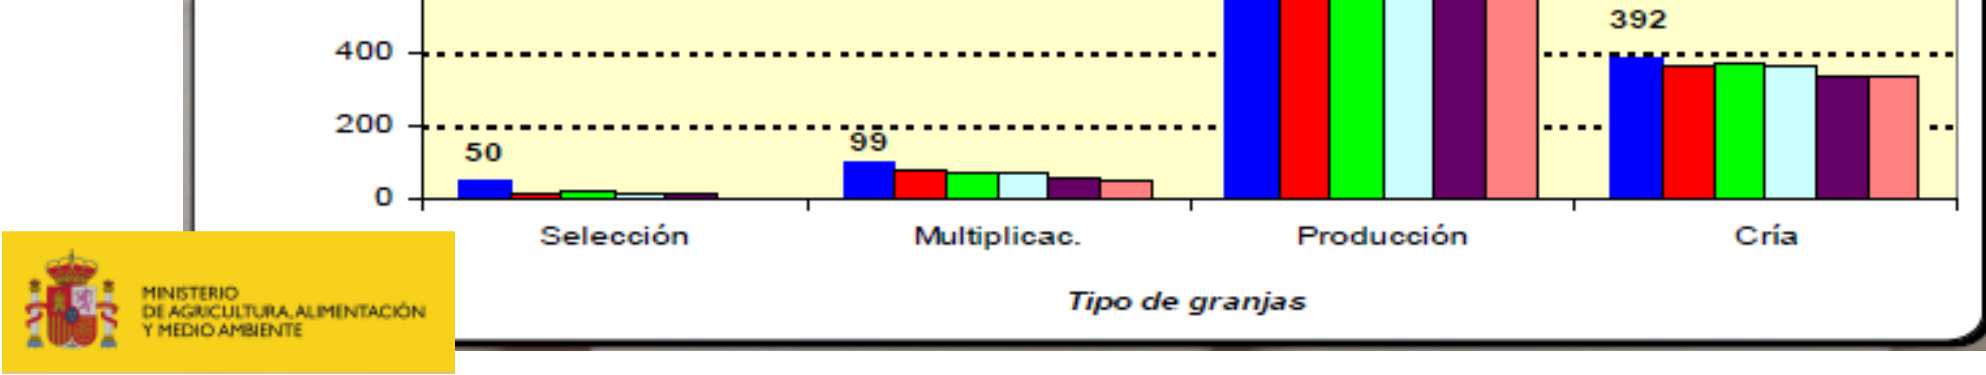 Gallinas ponedoras (oferta) En España se ha producido el cambio estructural en el sector productor de huevos, alcanzando el 100% de cambio en Julio 2012.